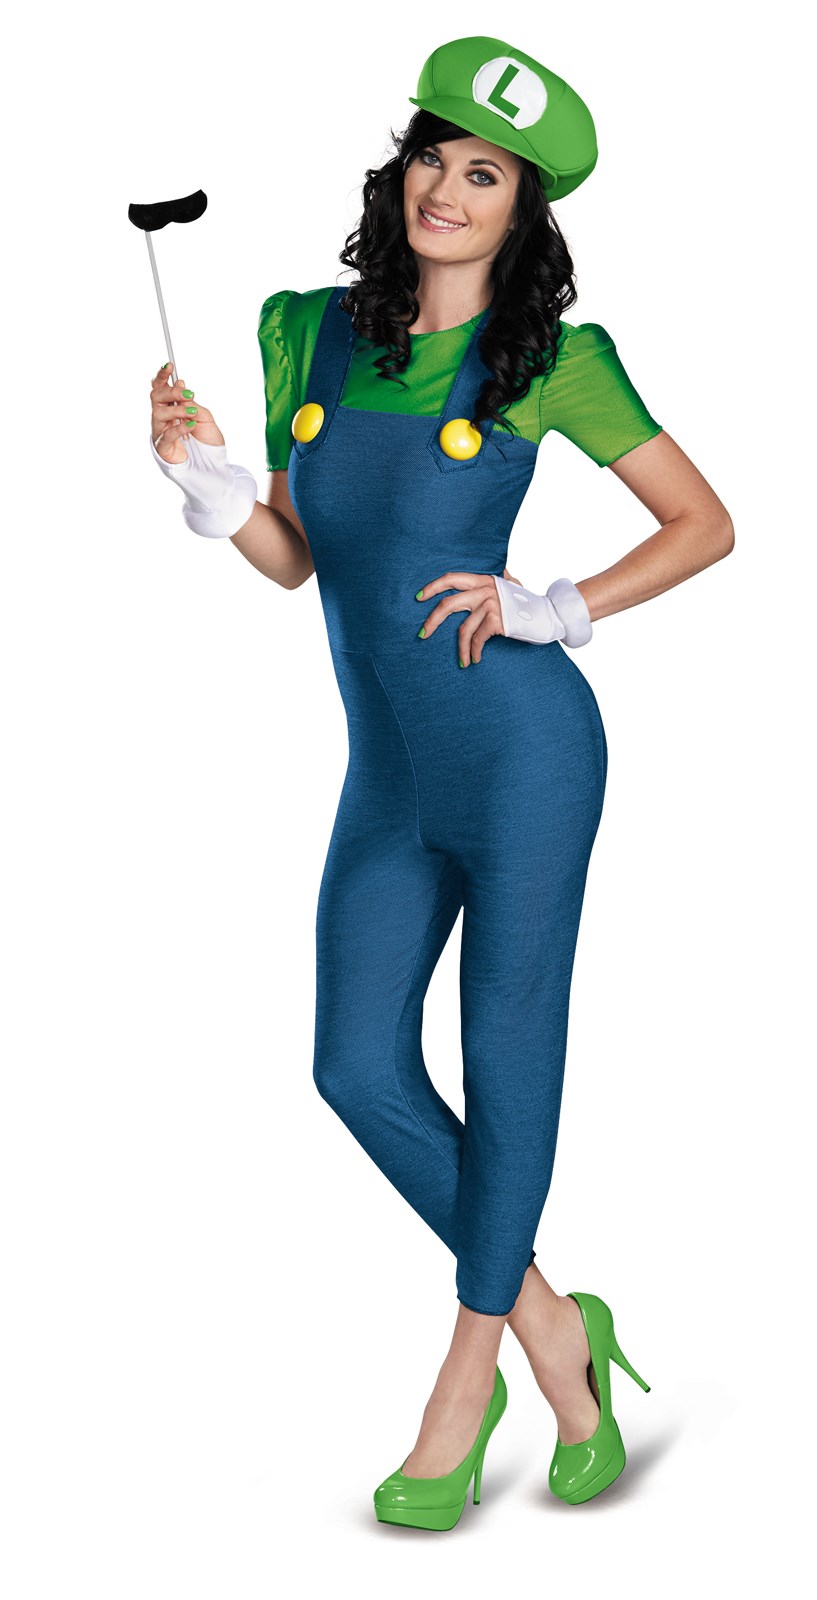 Super Mario Brothers – Deluxe Female Luigi Costume